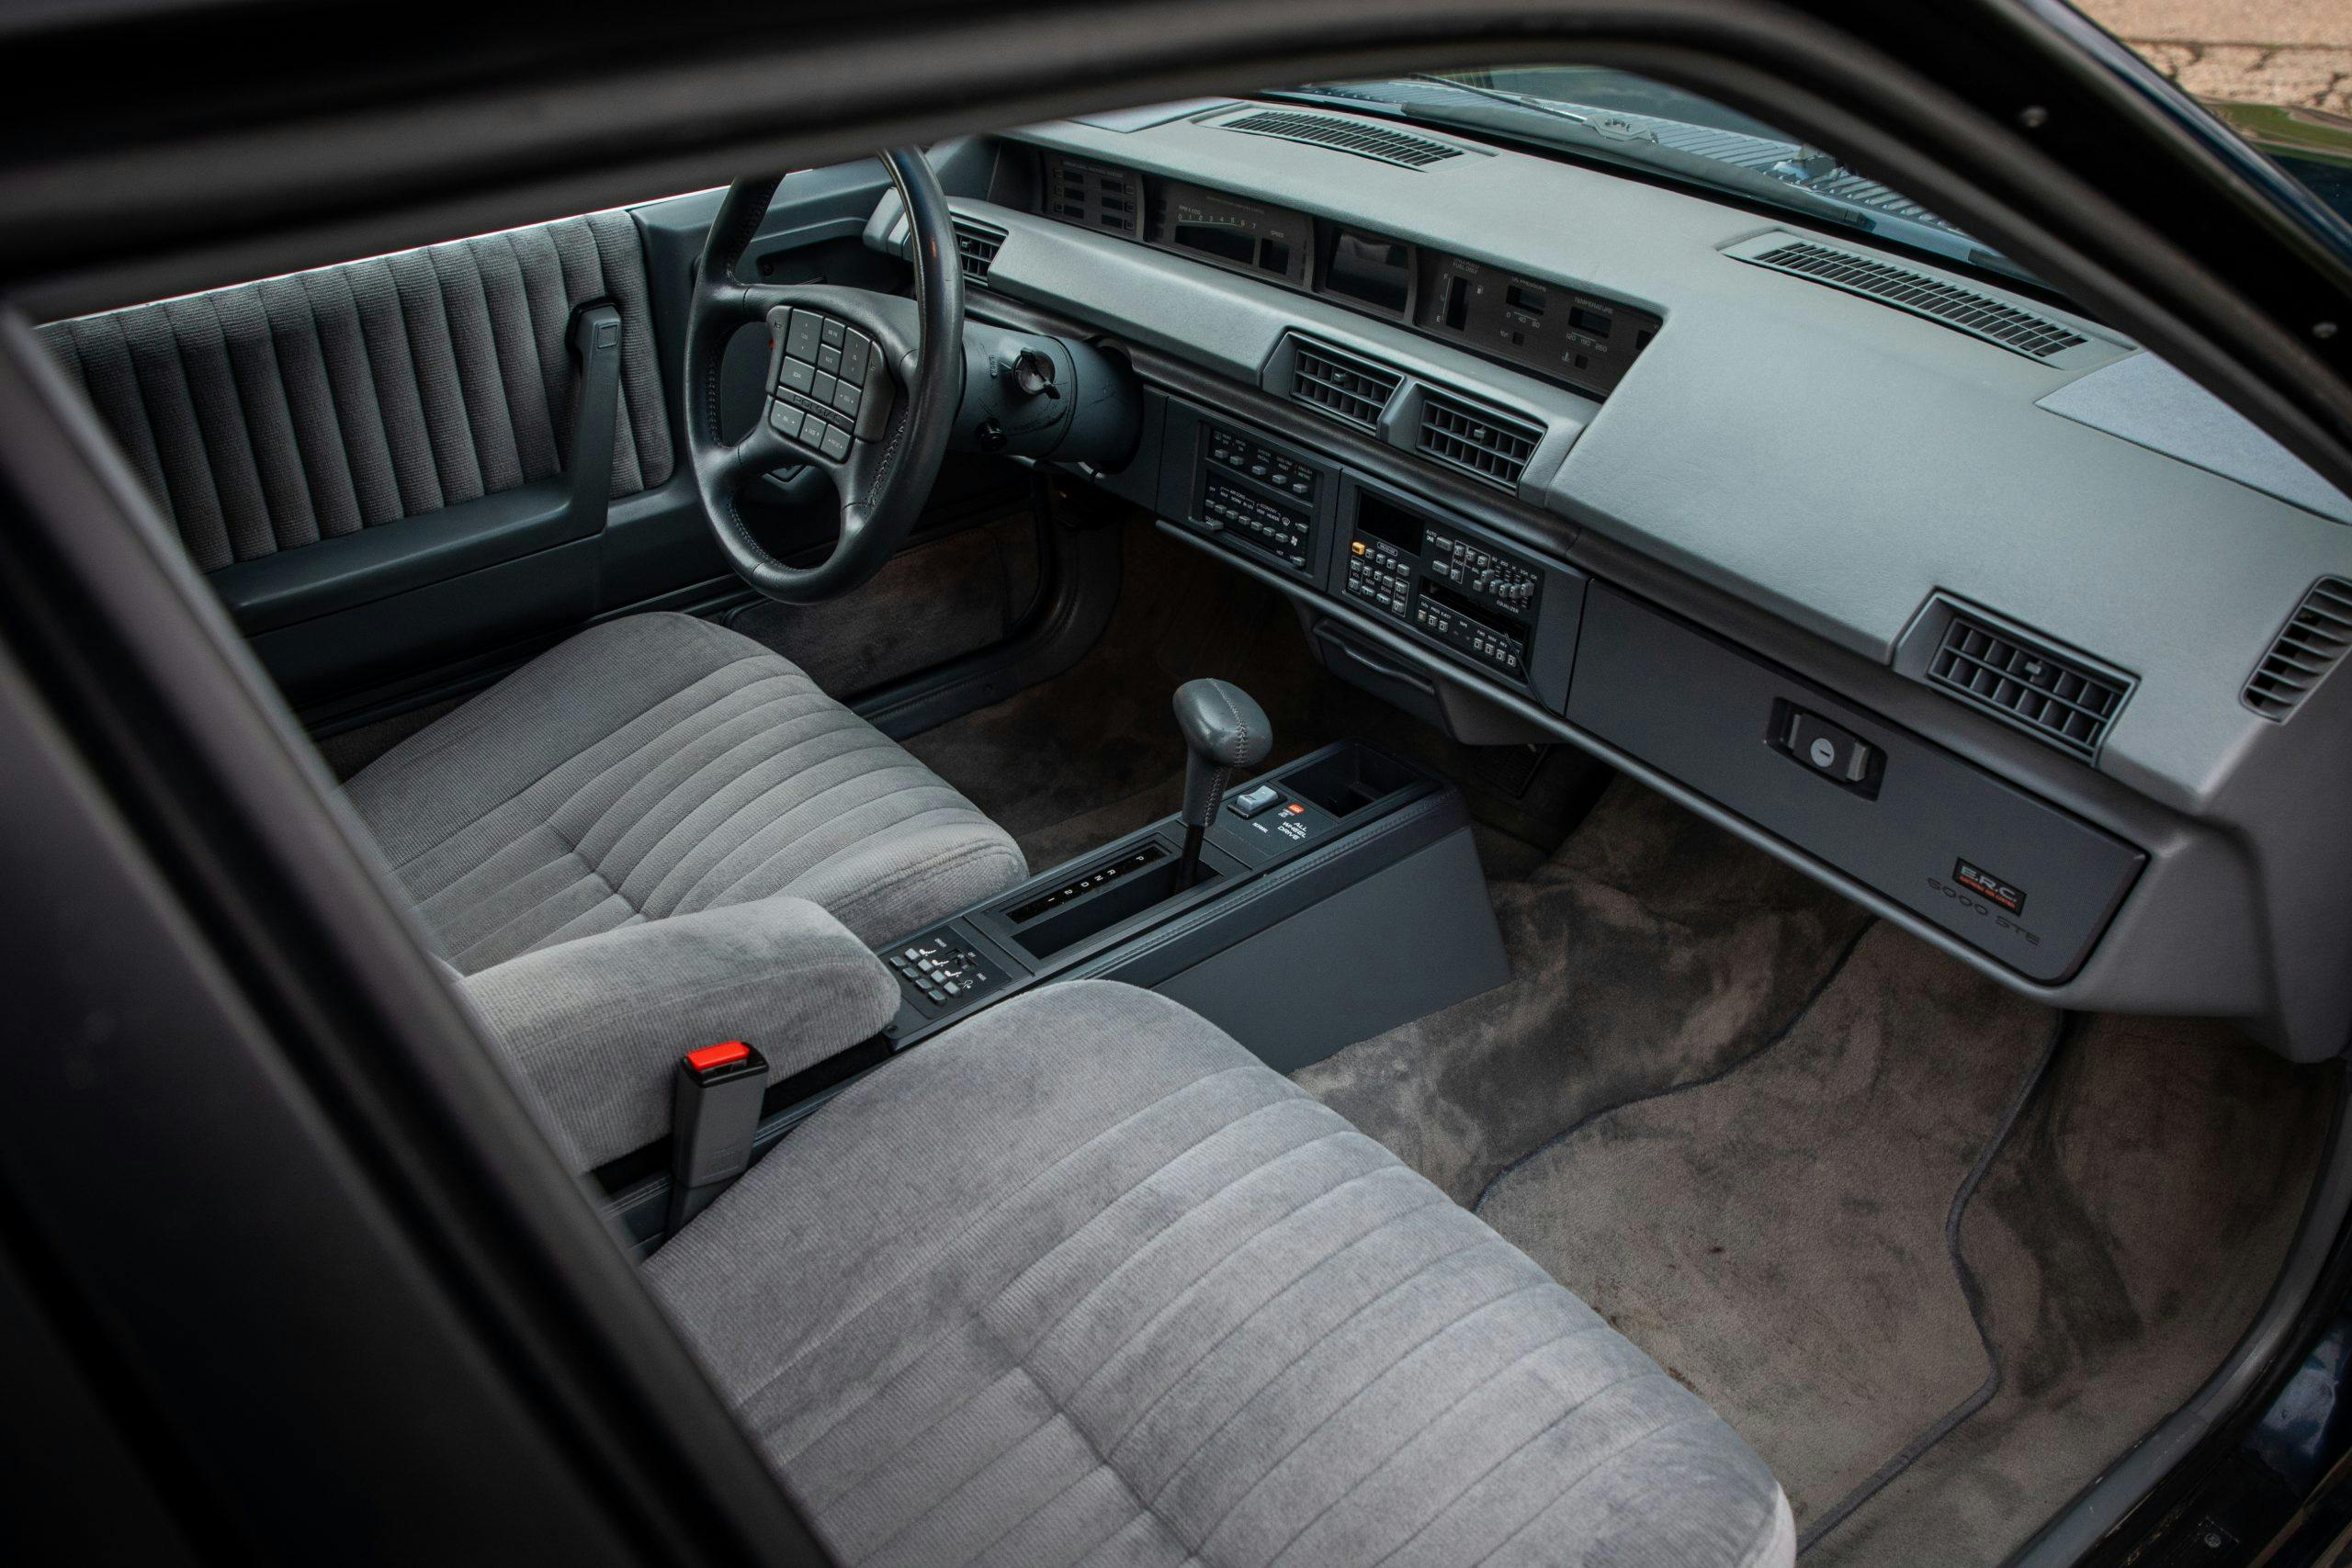 1989 Pontiac 6000STE AWD interior high angle